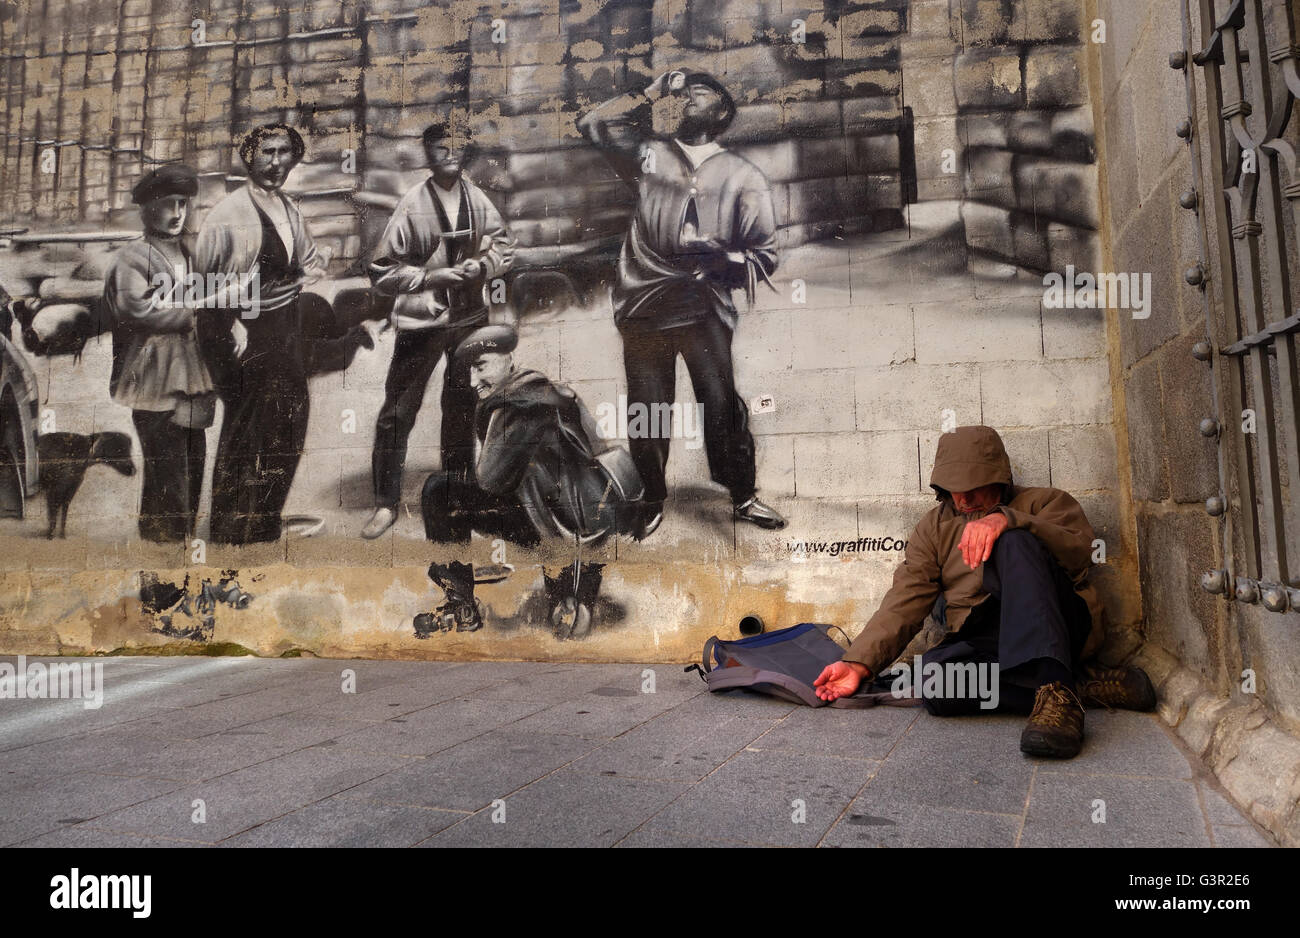 El hombre pidiendo limosna en la calle delante del mural en España Foto de stock